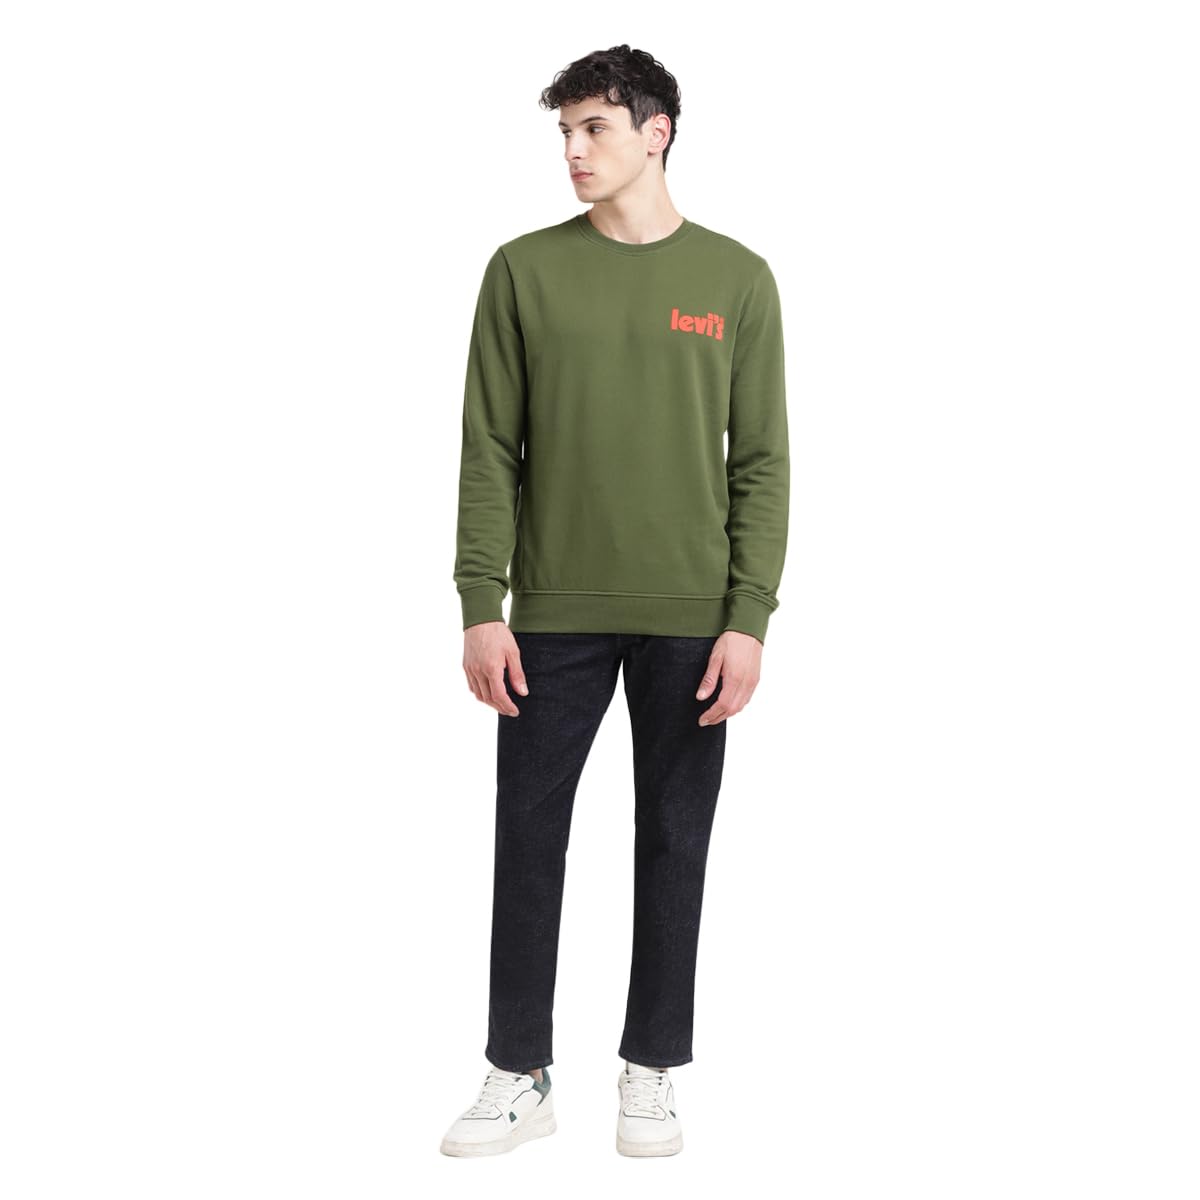 Levi's Men's Solid Green Crew Neck Sweatshirt